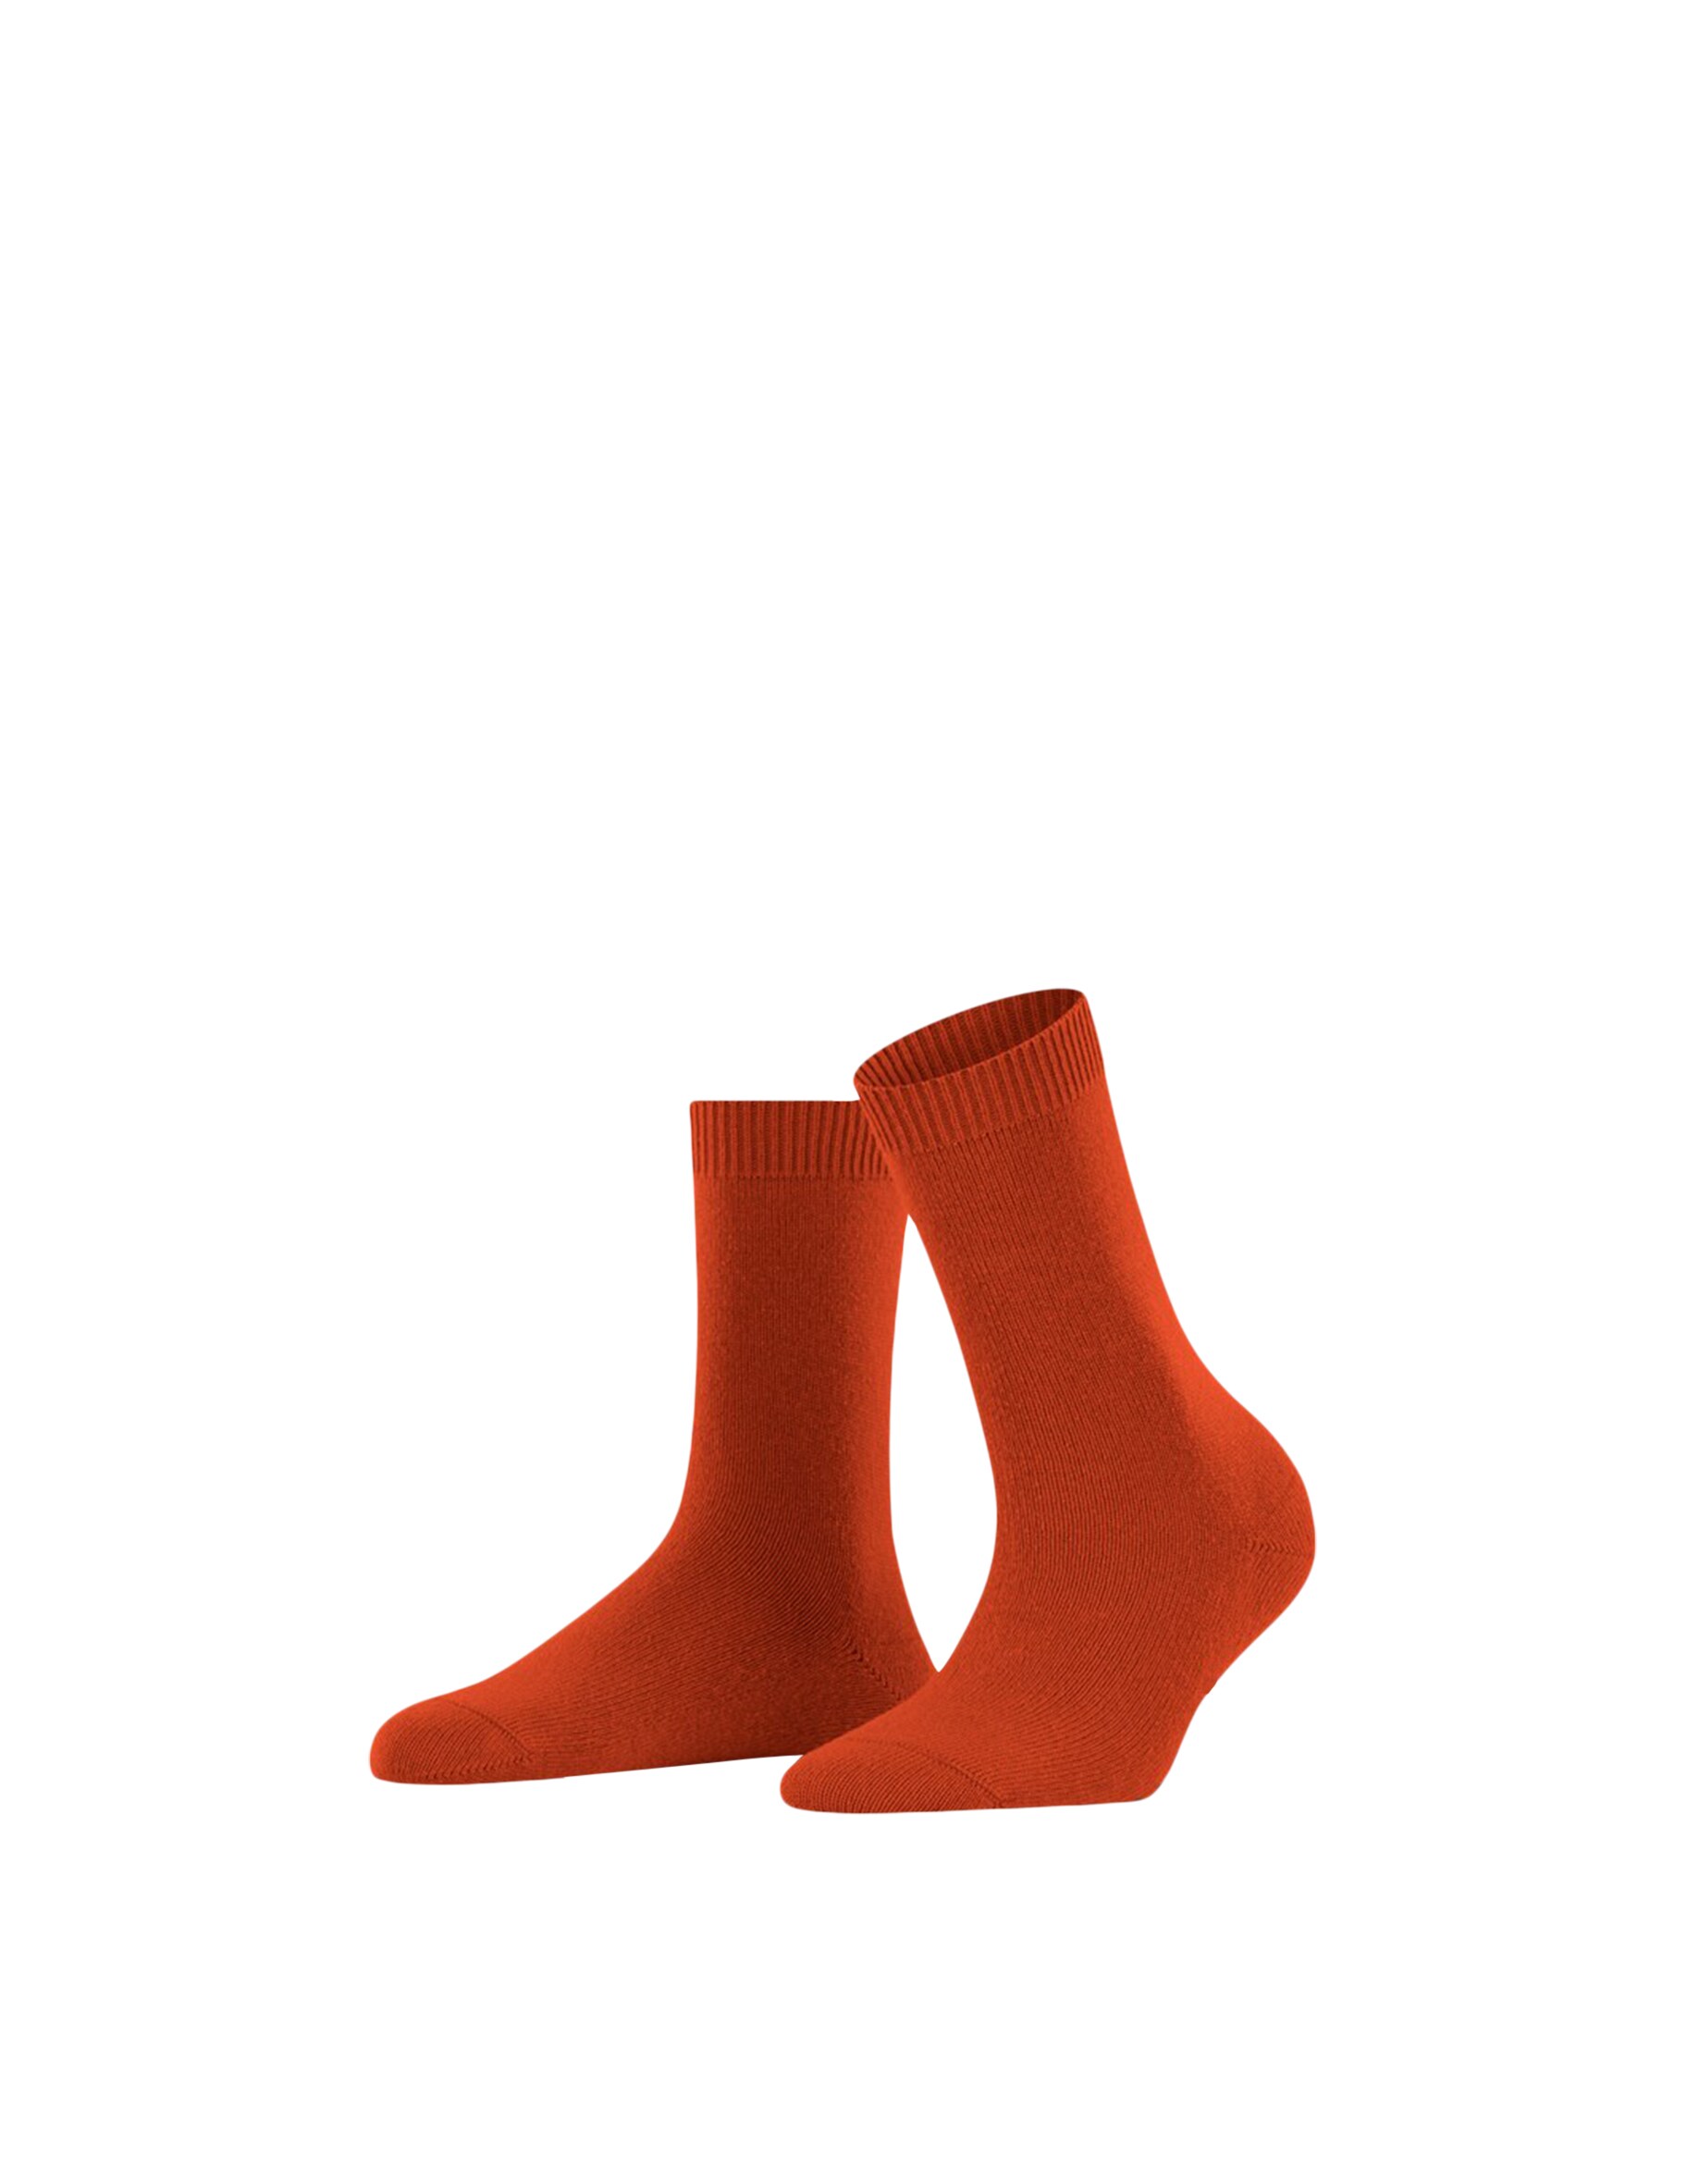 Уютные шерстяные носки Falke, оранжевый уютные шерстяные носки falke цвет jasper brown